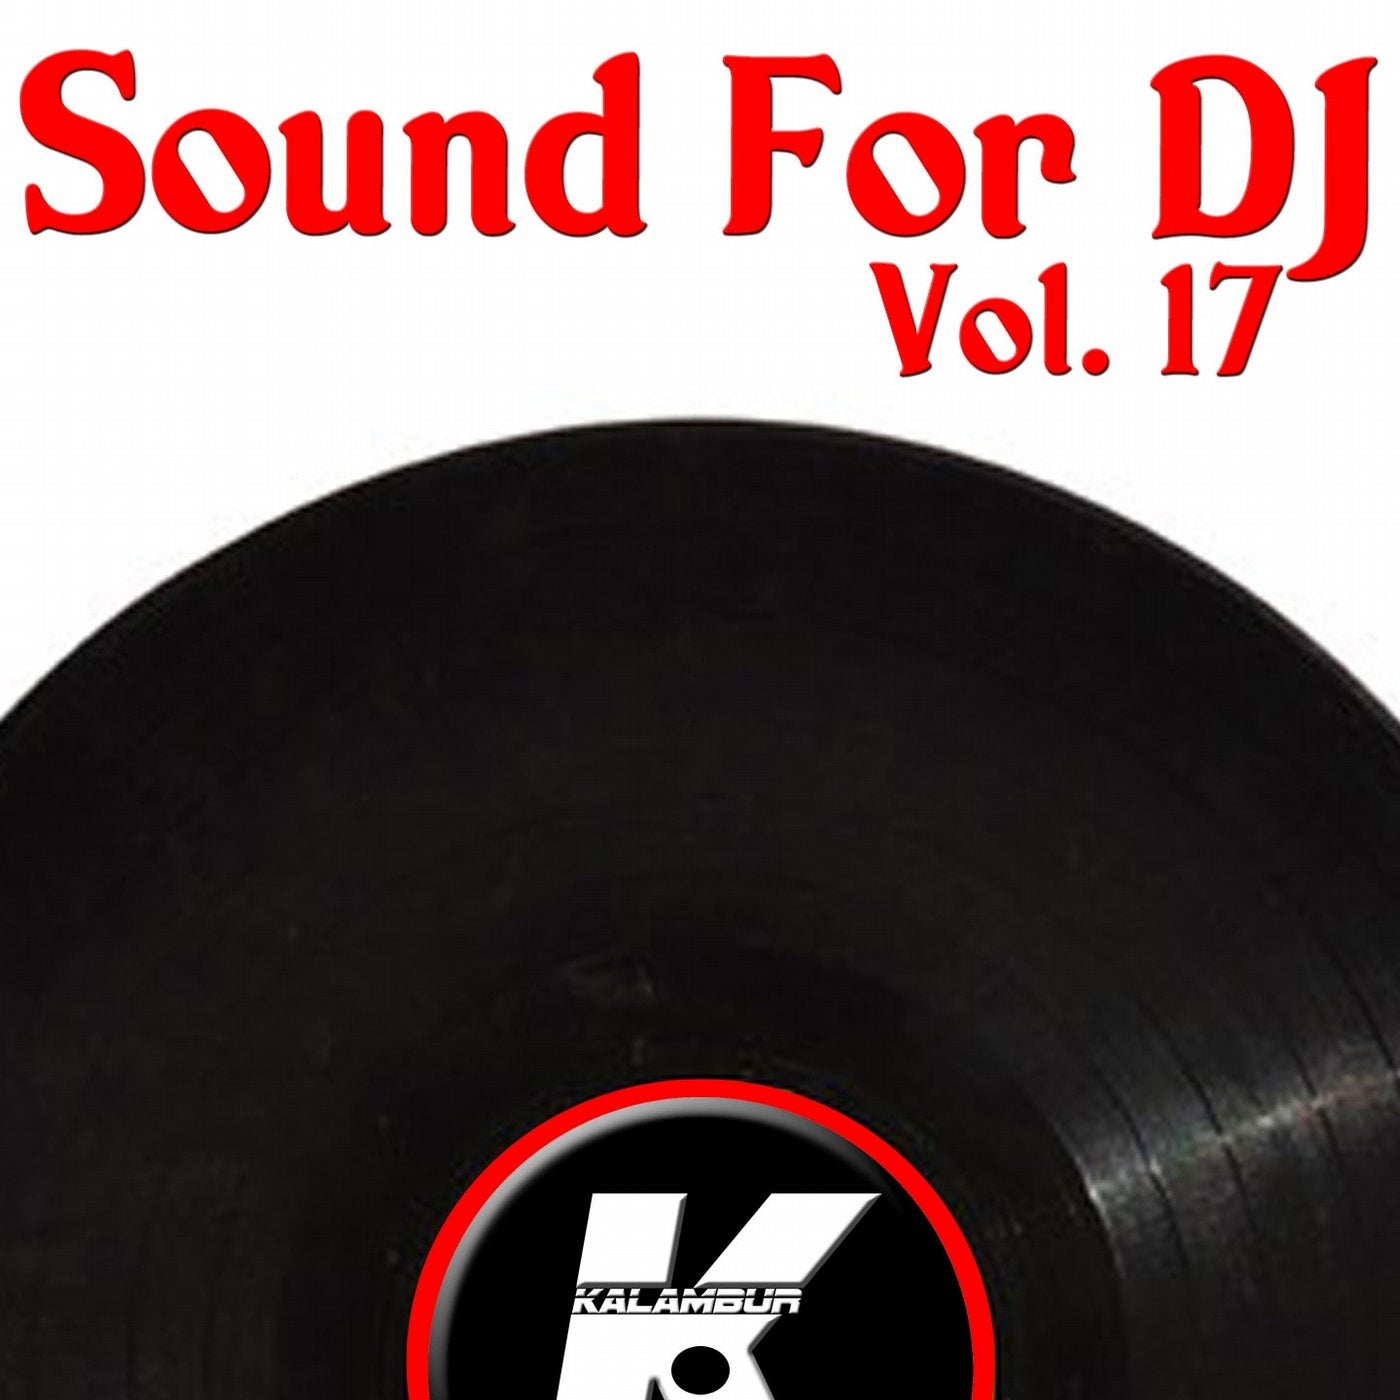 SOUND FOR DJ VOL 17